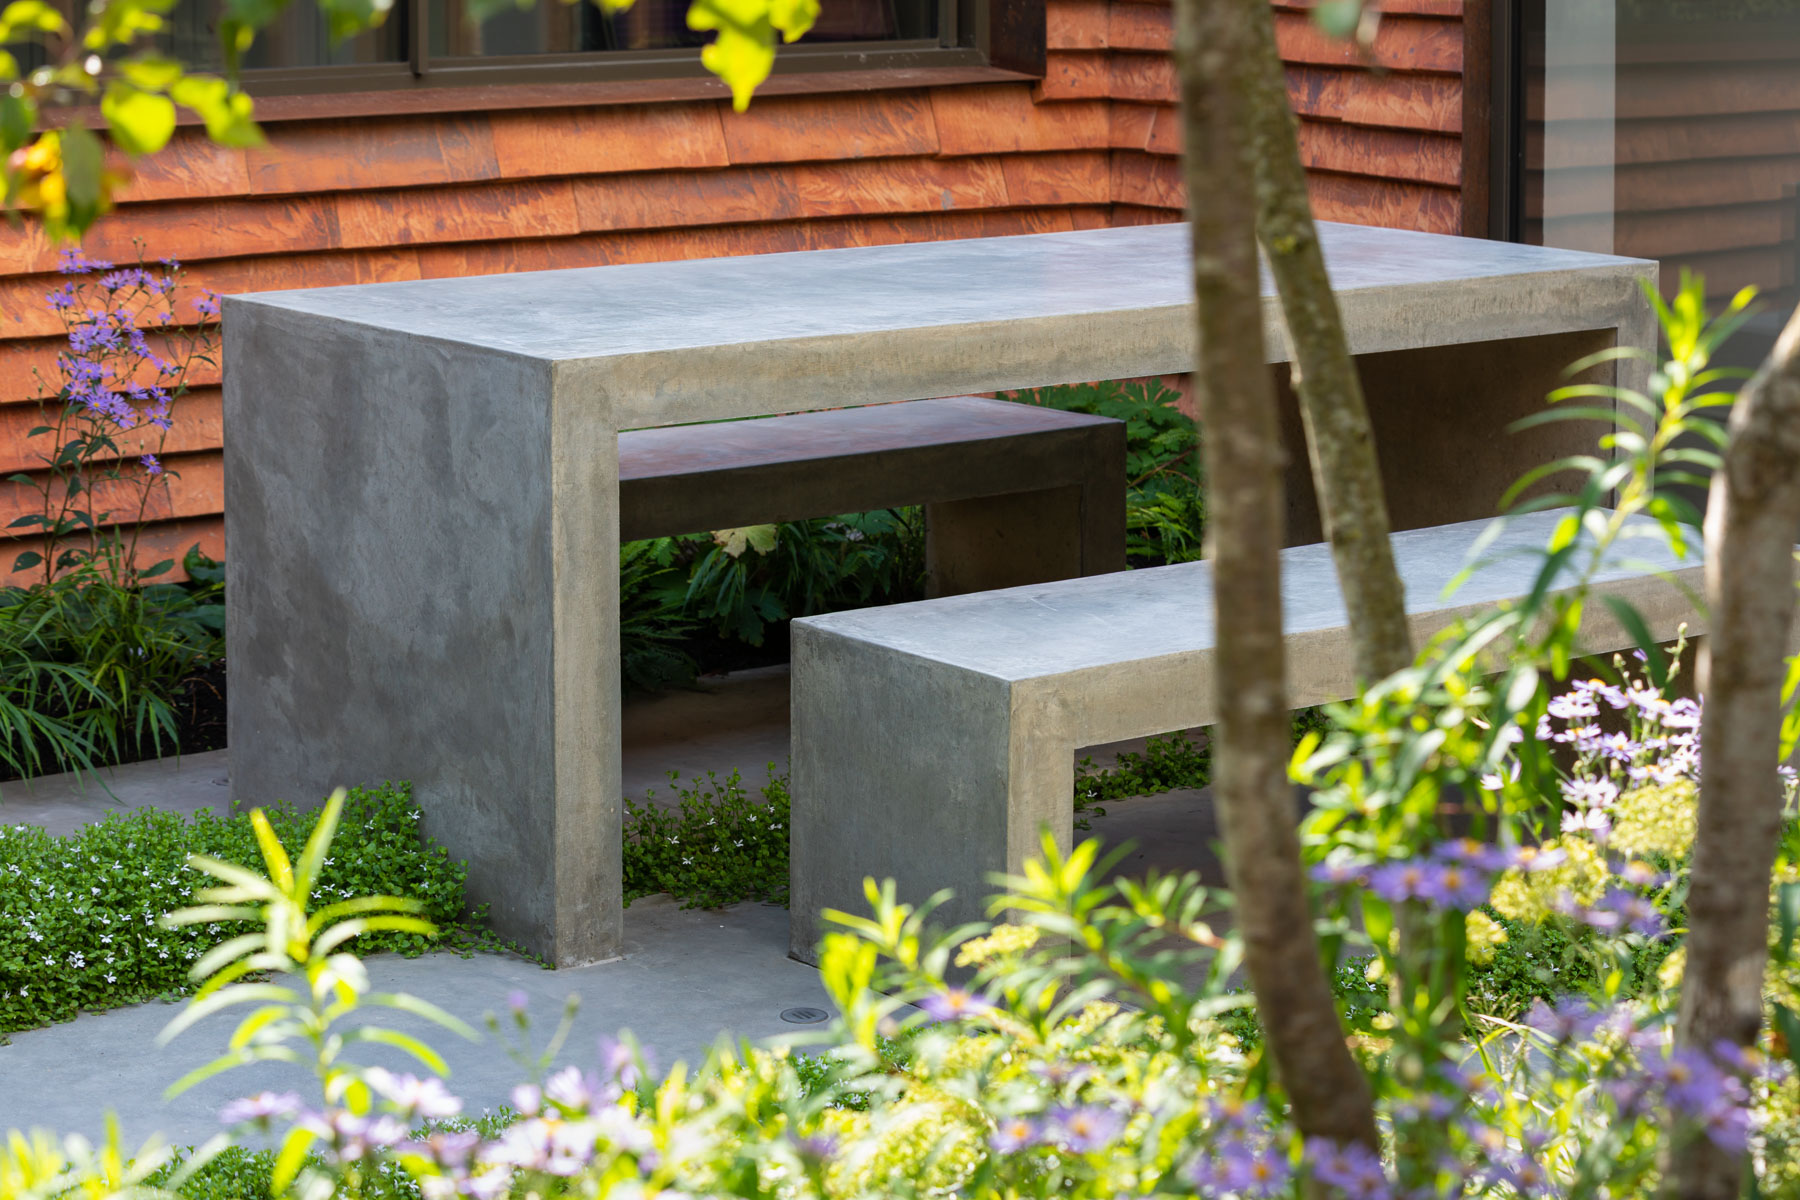 Colm Joseph Cambridge garden designer modern architecture concrete furniture contemporary planting 